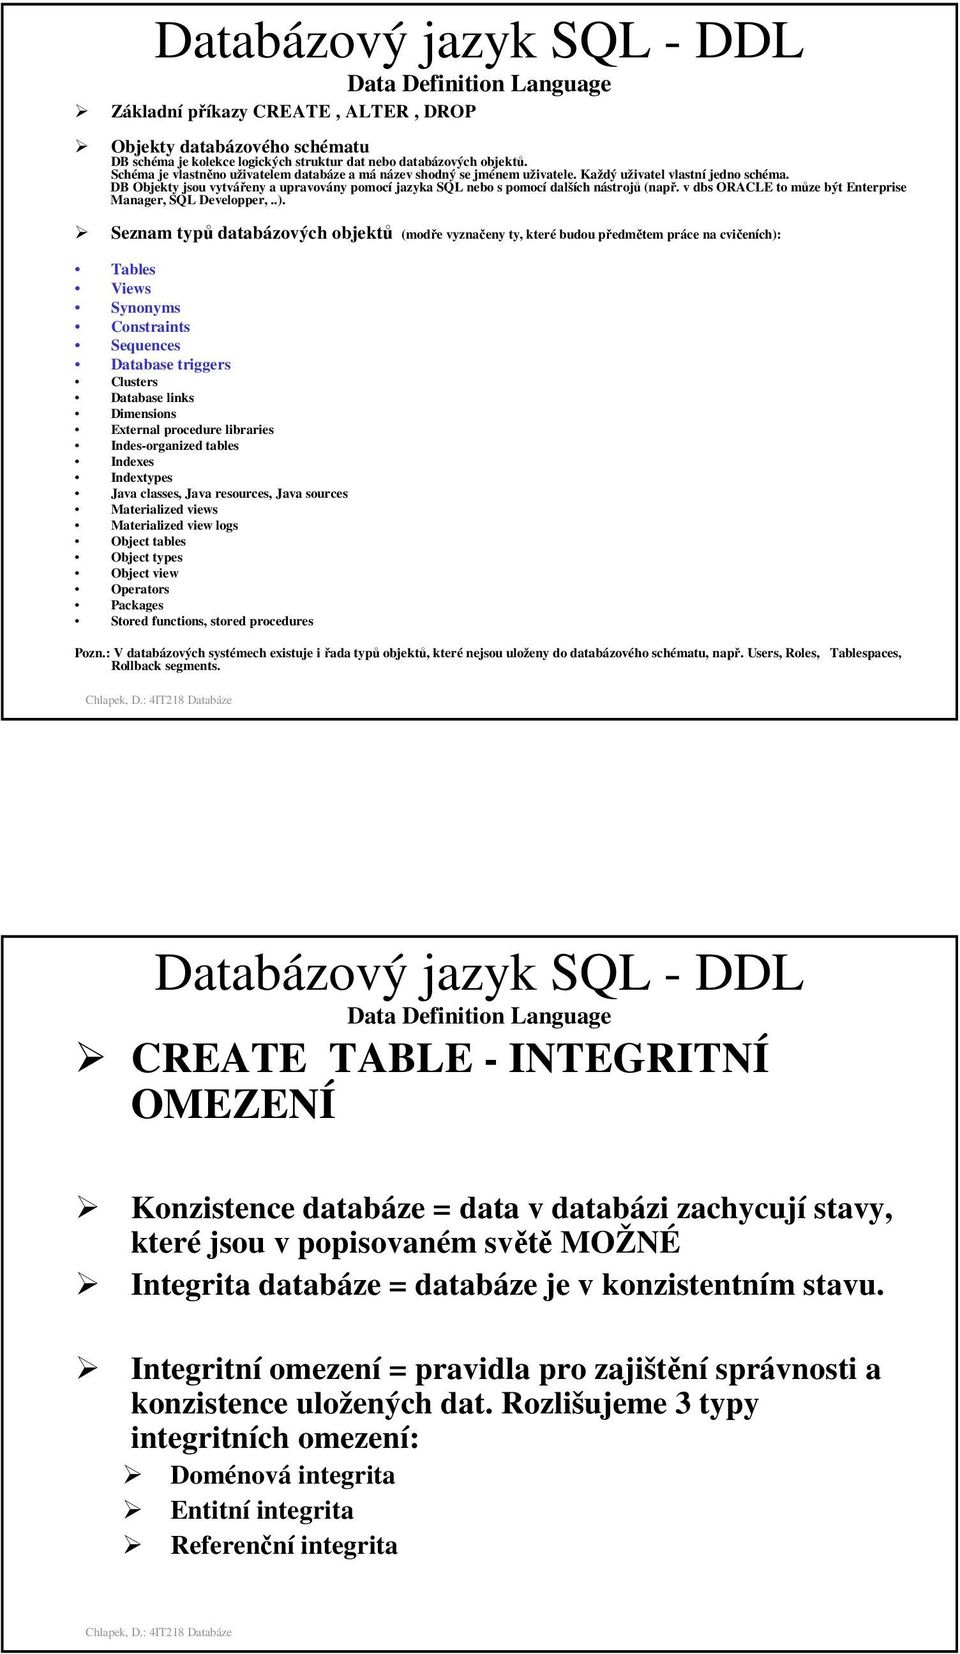 DB Objekty jsou vytvářeny a upravovány pomocí jazyka SQL nebo s pomocí dalších nástrojů (např. v dbs ORACLE to můze být Enterprise Manager, SQL Developper,..).